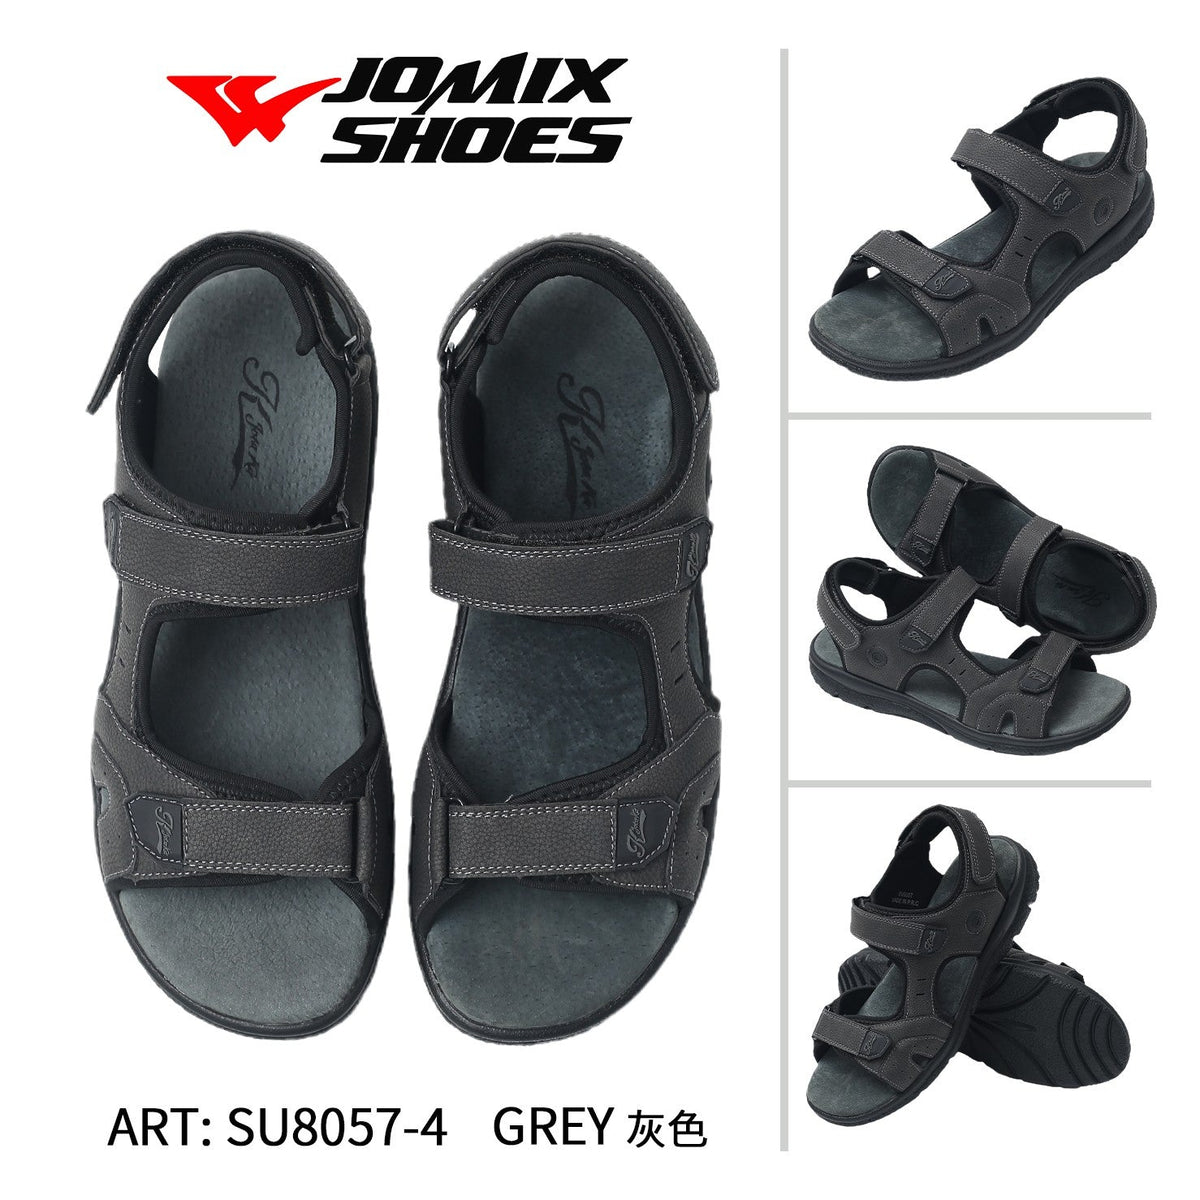 Sandali da uomo Jomix Shoes SU8057-4